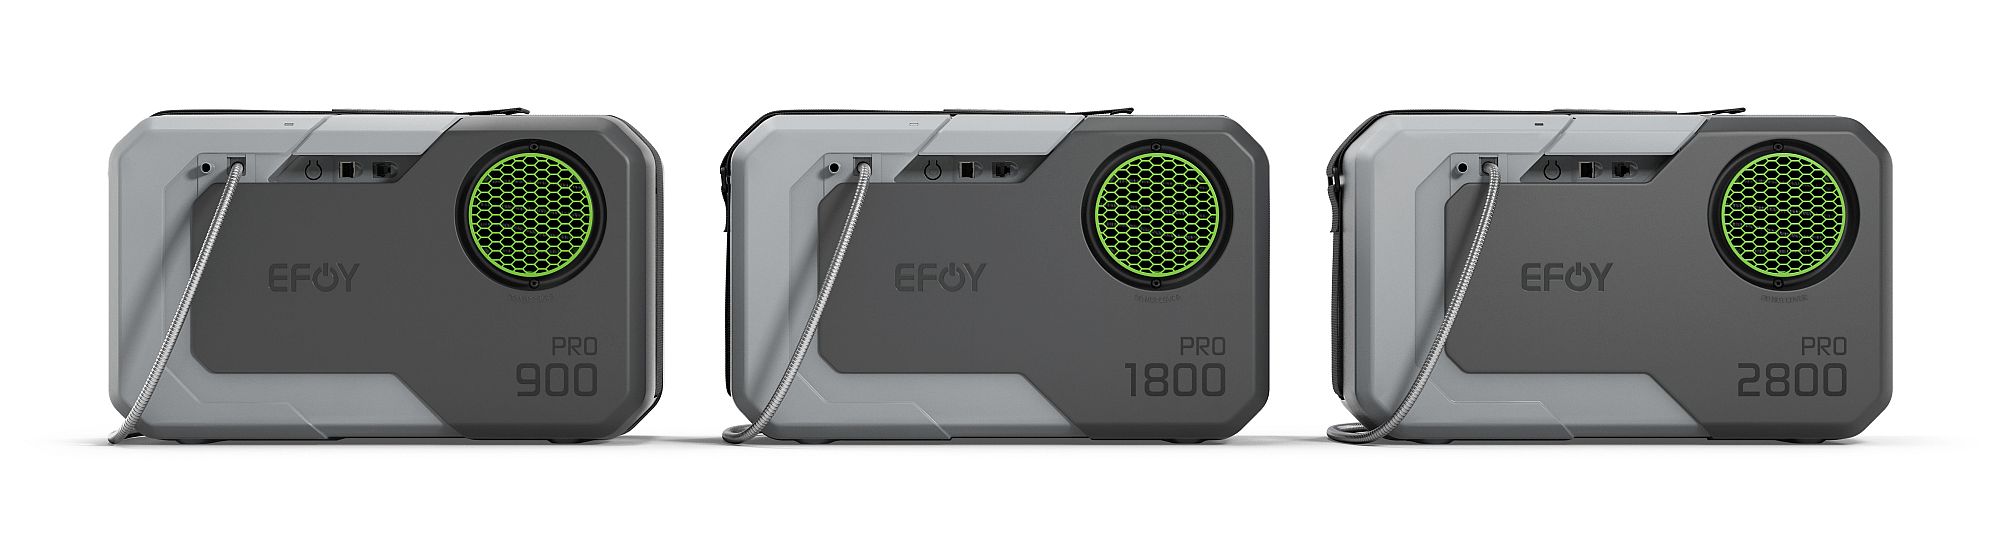 SFC EFOY Pro product range 2000w